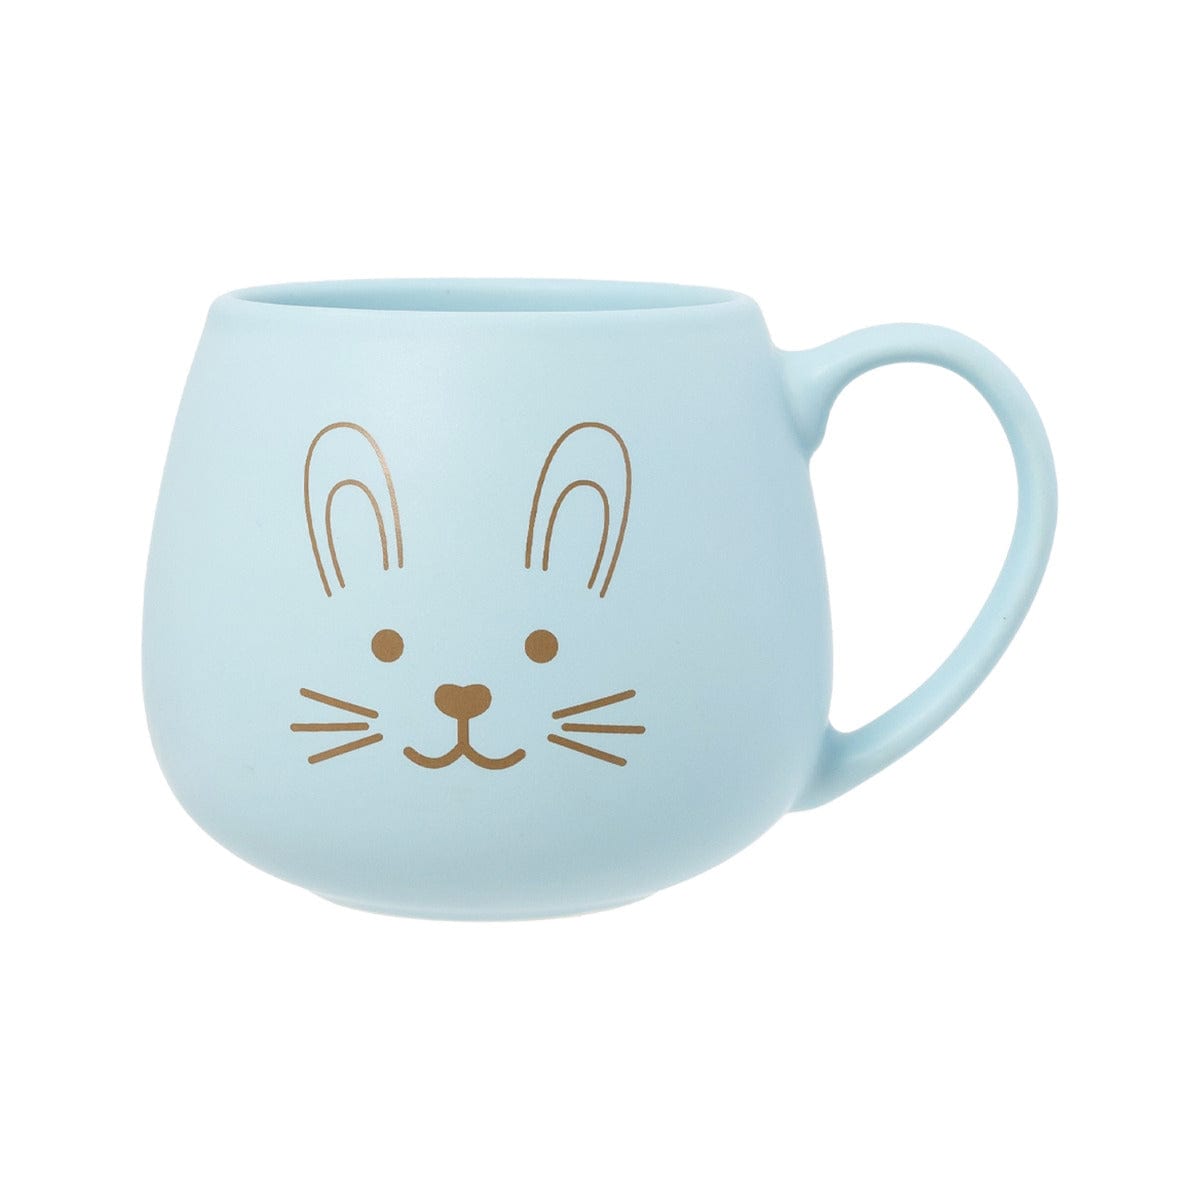 Splosh Accessory Feeding Blue Easter Mug